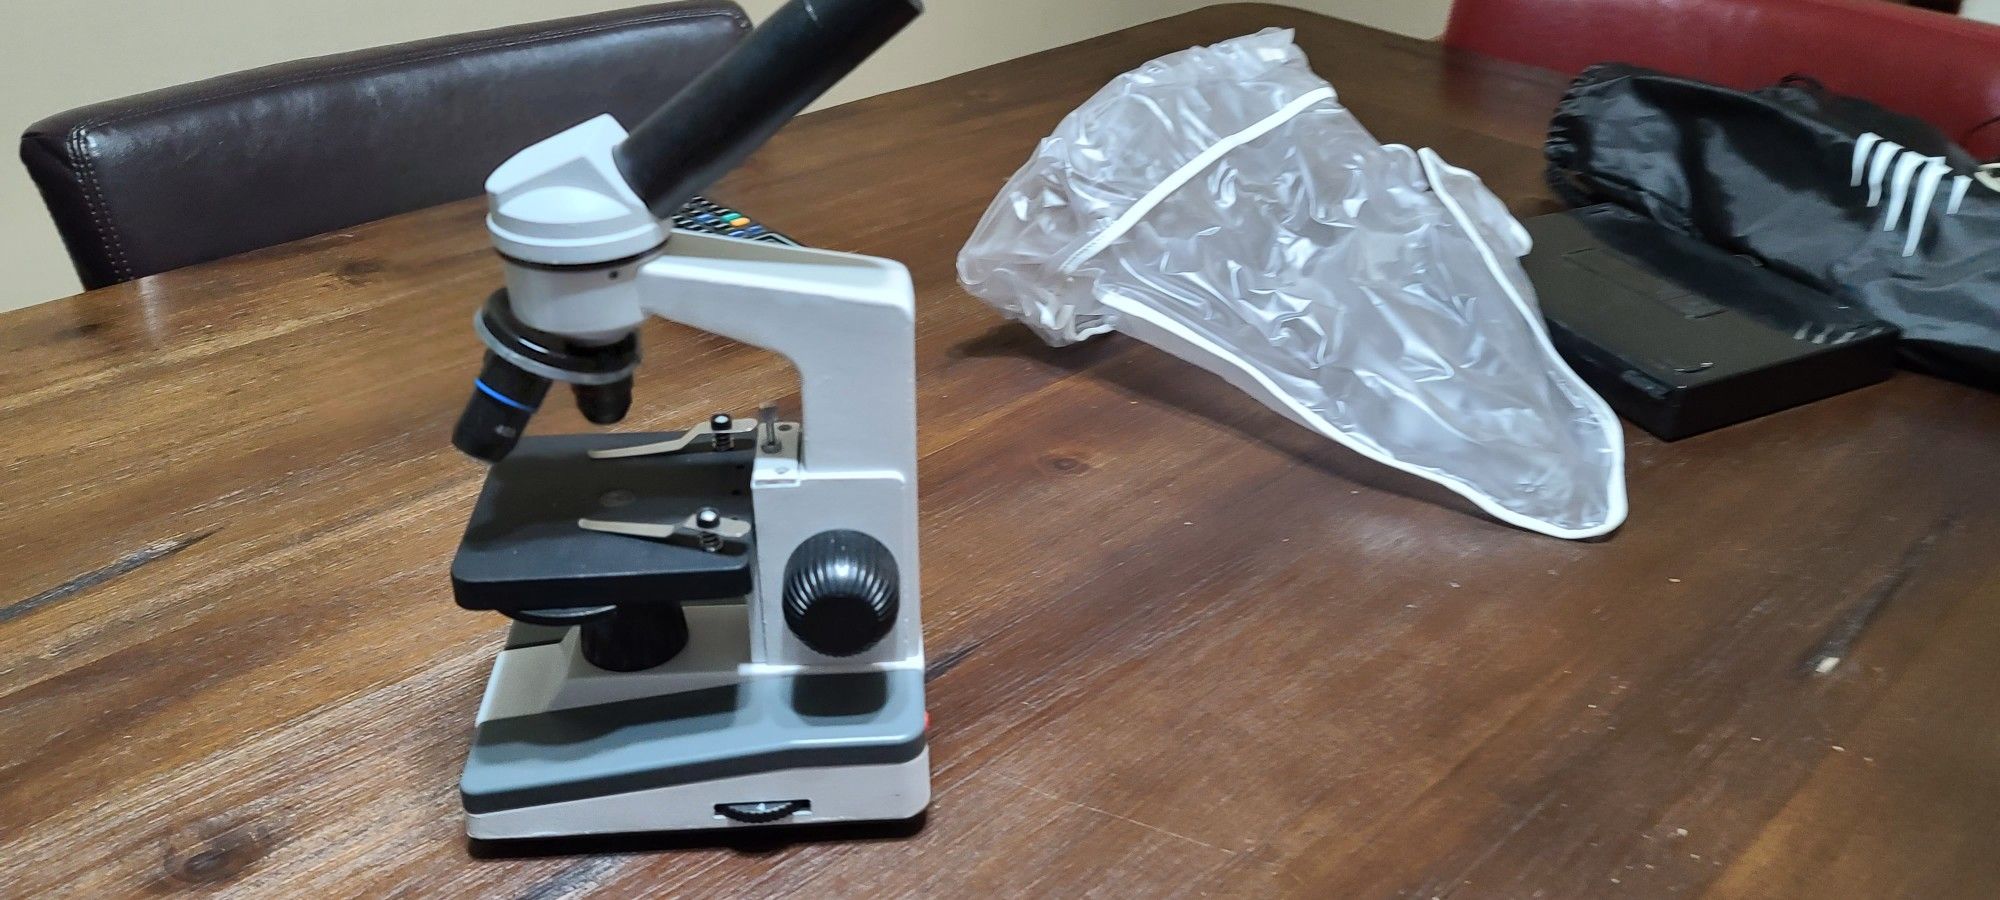 MFL Microscope